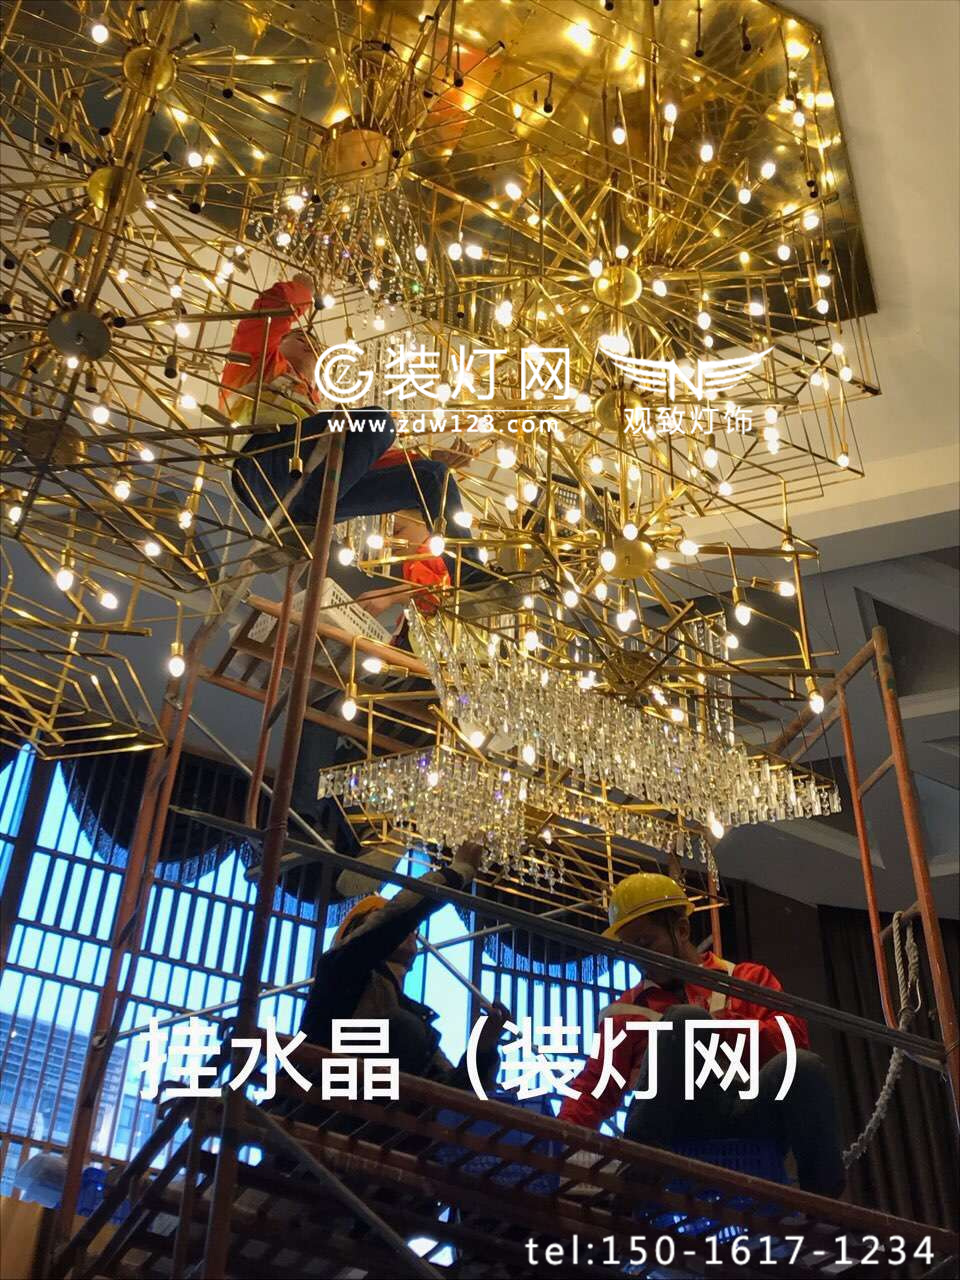 广州花都聚喜莱酒店水晶灯清洗维修作业